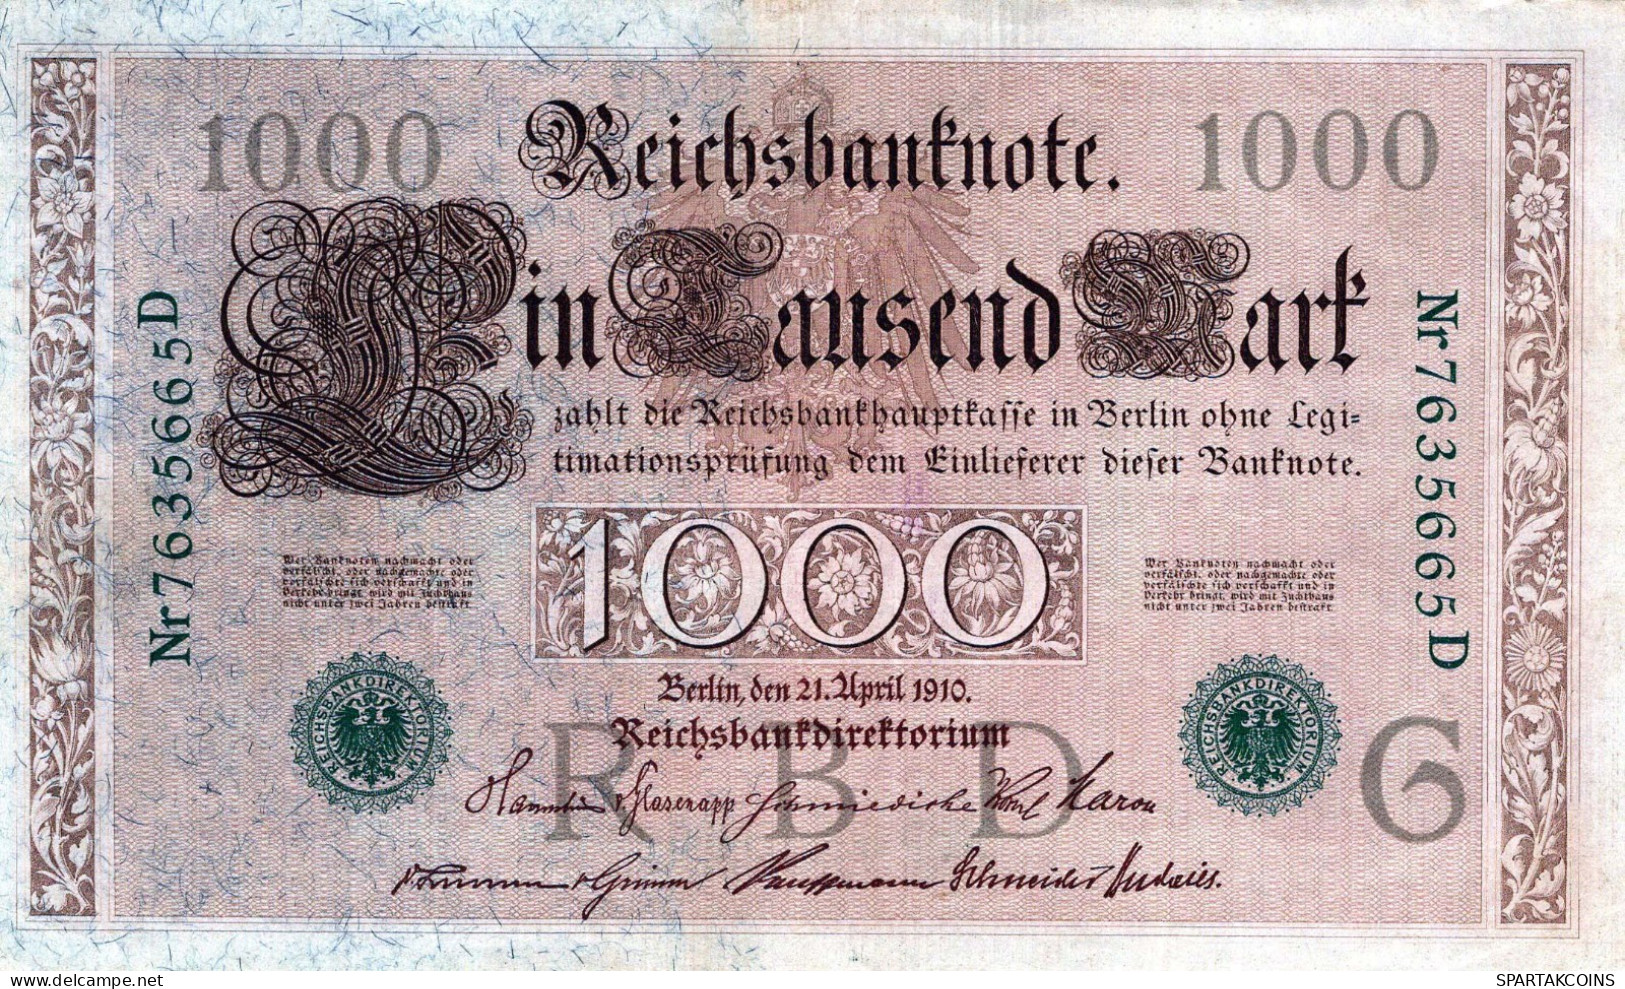 1000 MARK 1910 DEUTSCHLAND Papiergeld Banknote #PL372 - [11] Emissions Locales